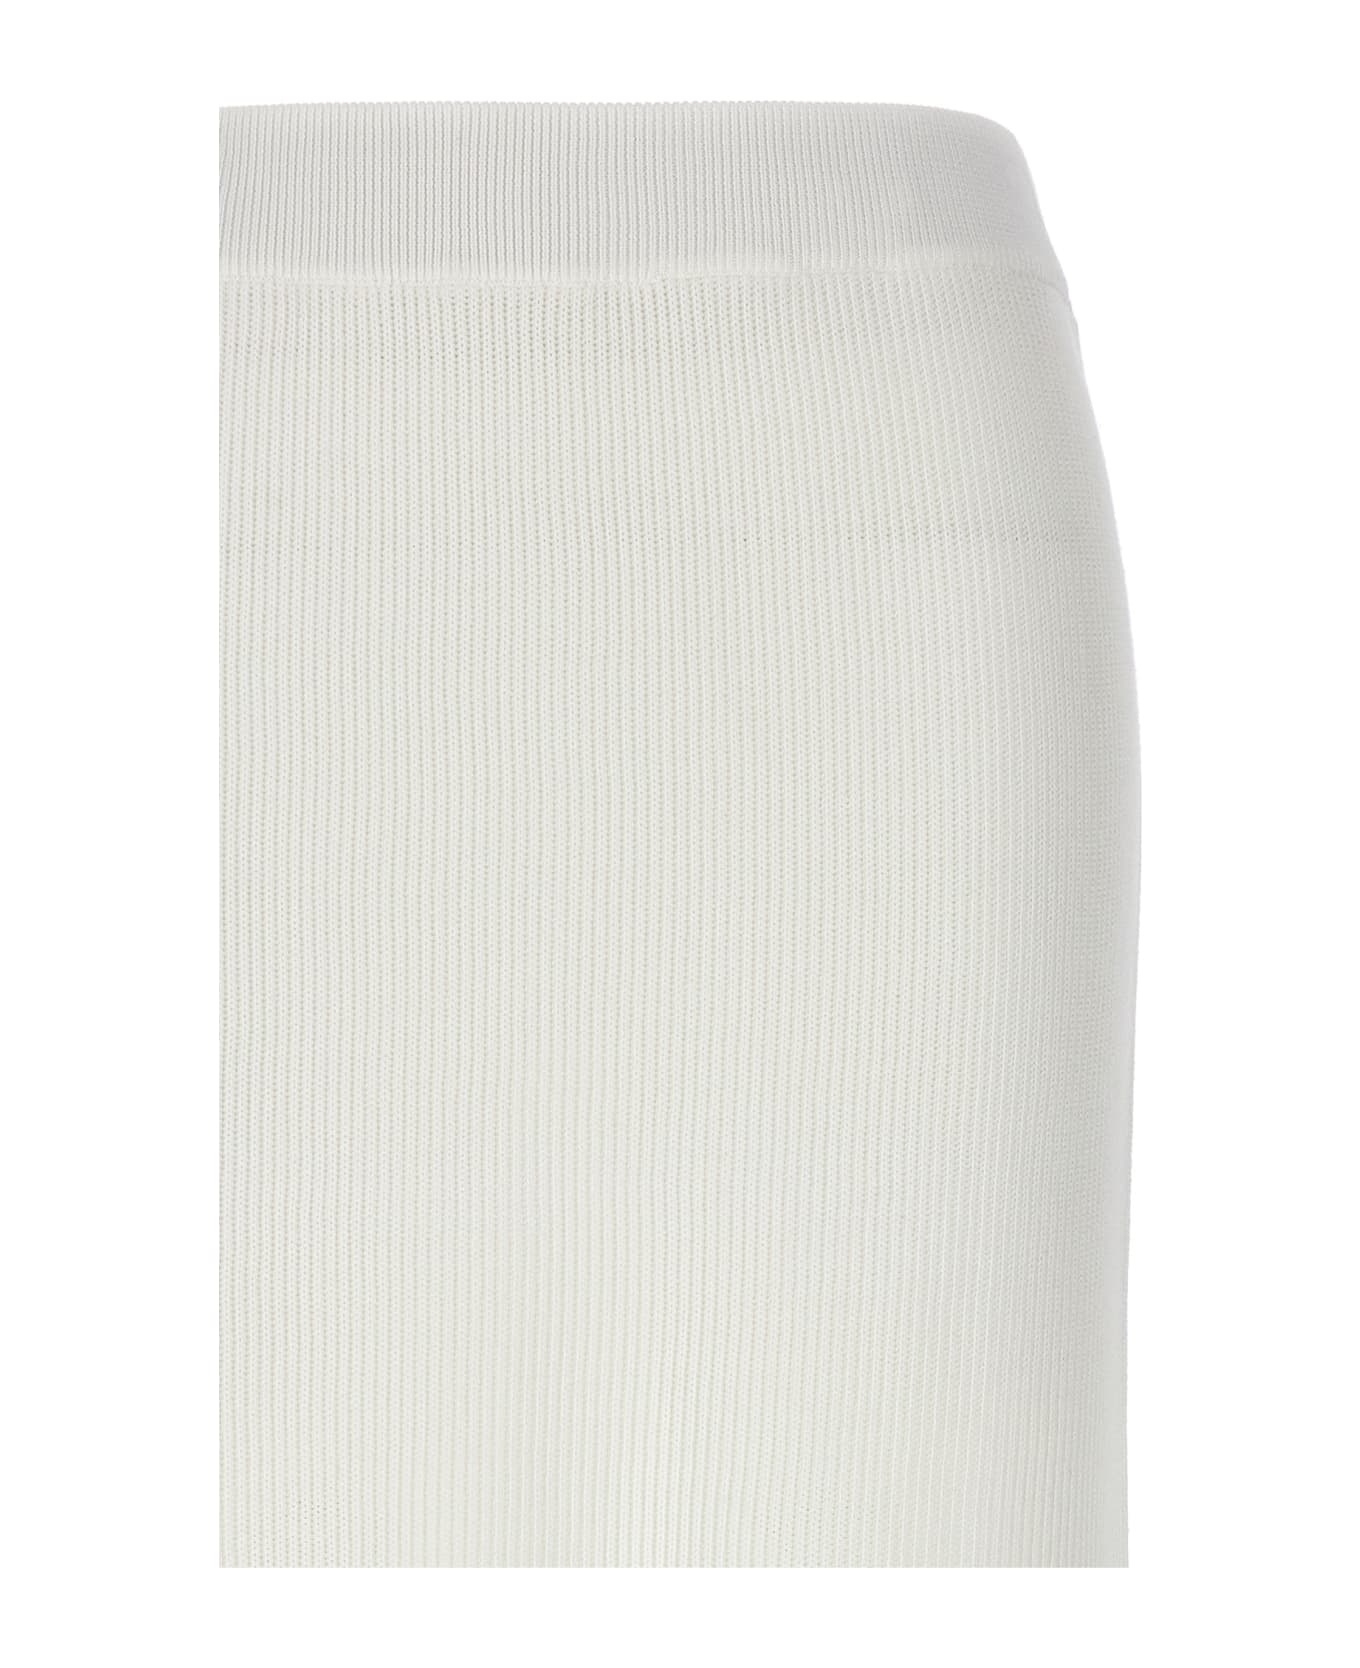 Brunello Cucinelli Knitted Skirt - White